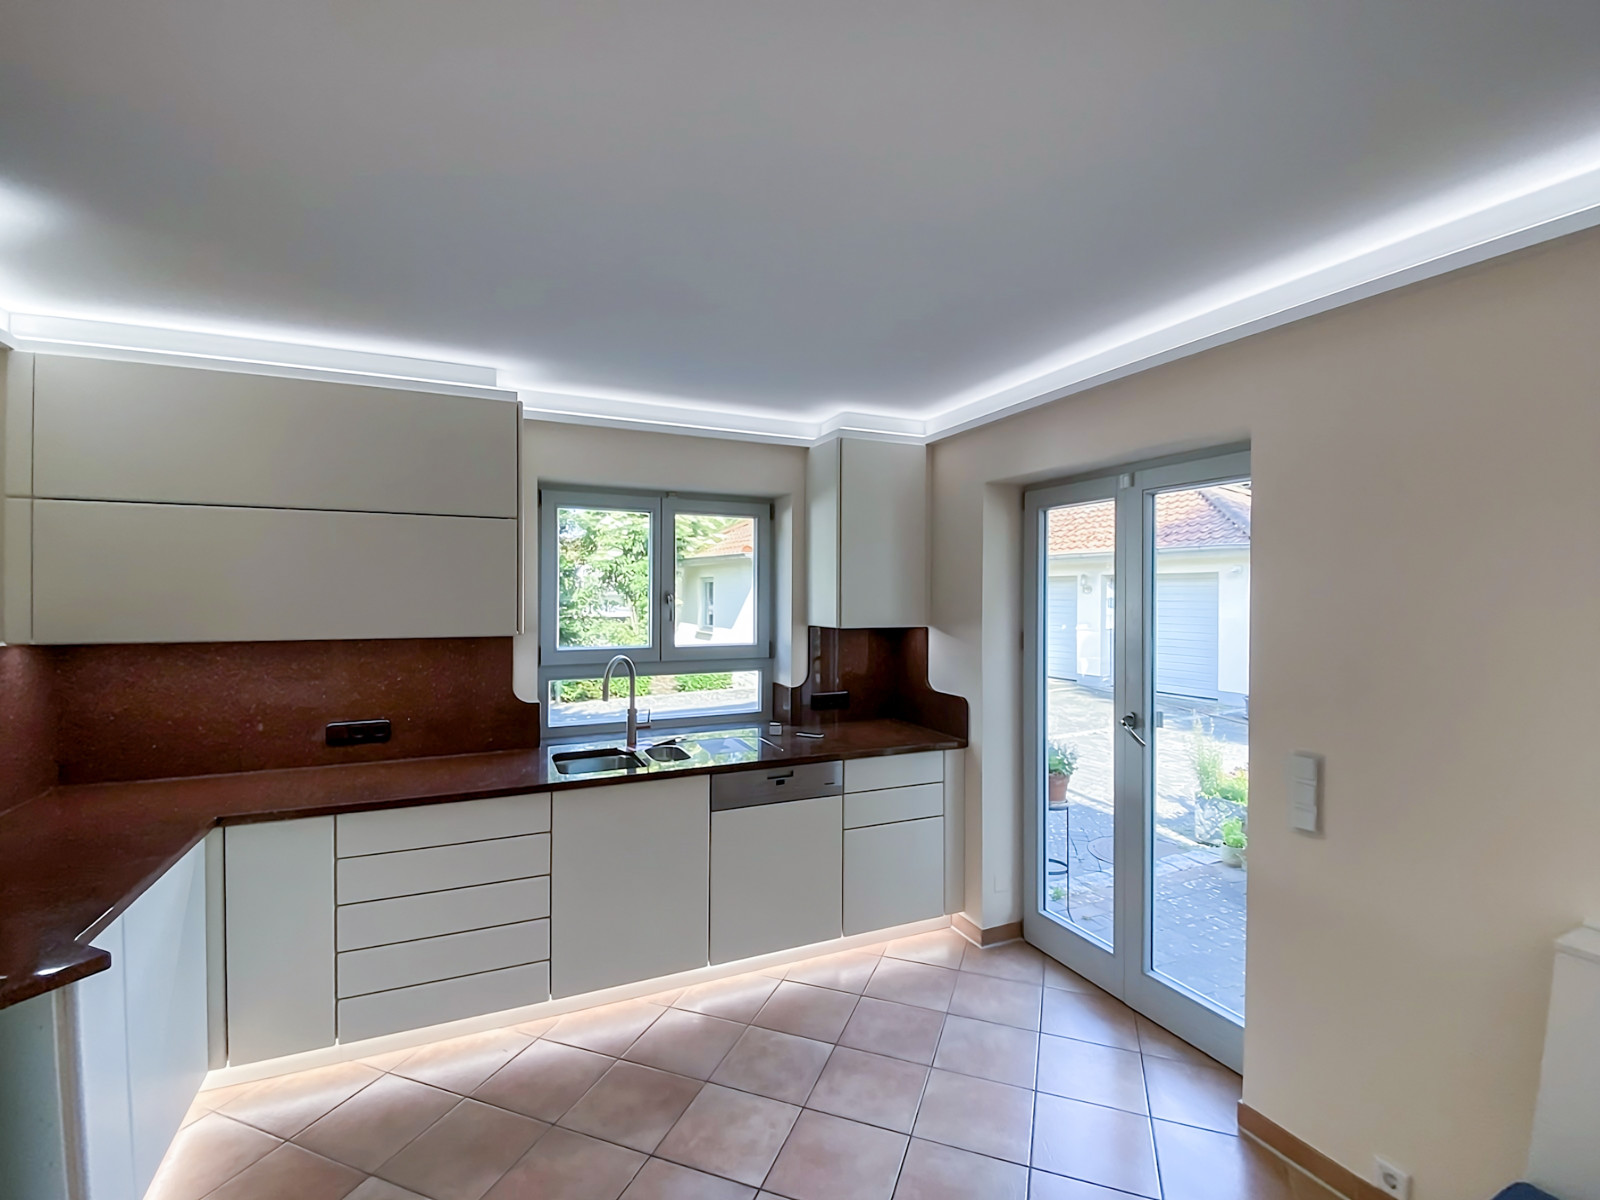 Gestalten mit Licht: In dieser Küche hat die Tischlerei Schulmeyer eine indirekte Beleuchtungslösung realisiert. 